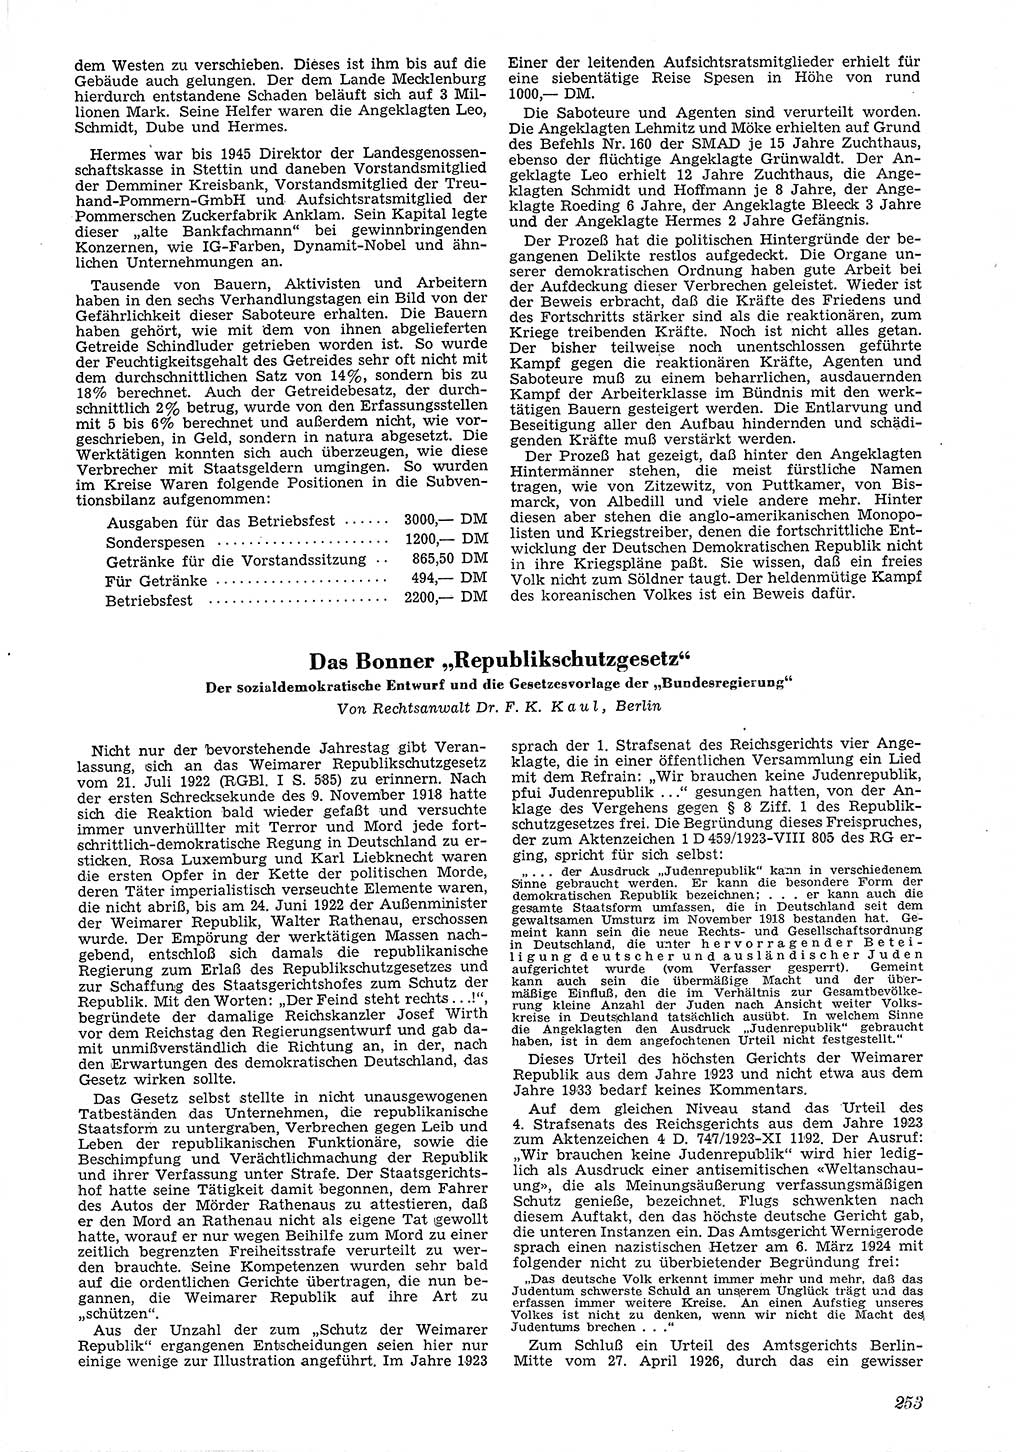 Neue Justiz (NJ), Zeitschrift für Recht und Rechtswissenschaft [Deutsche Demokratische Republik (DDR)], 4. Jahrgang 1950, Seite 253 (NJ DDR 1950, S. 253)